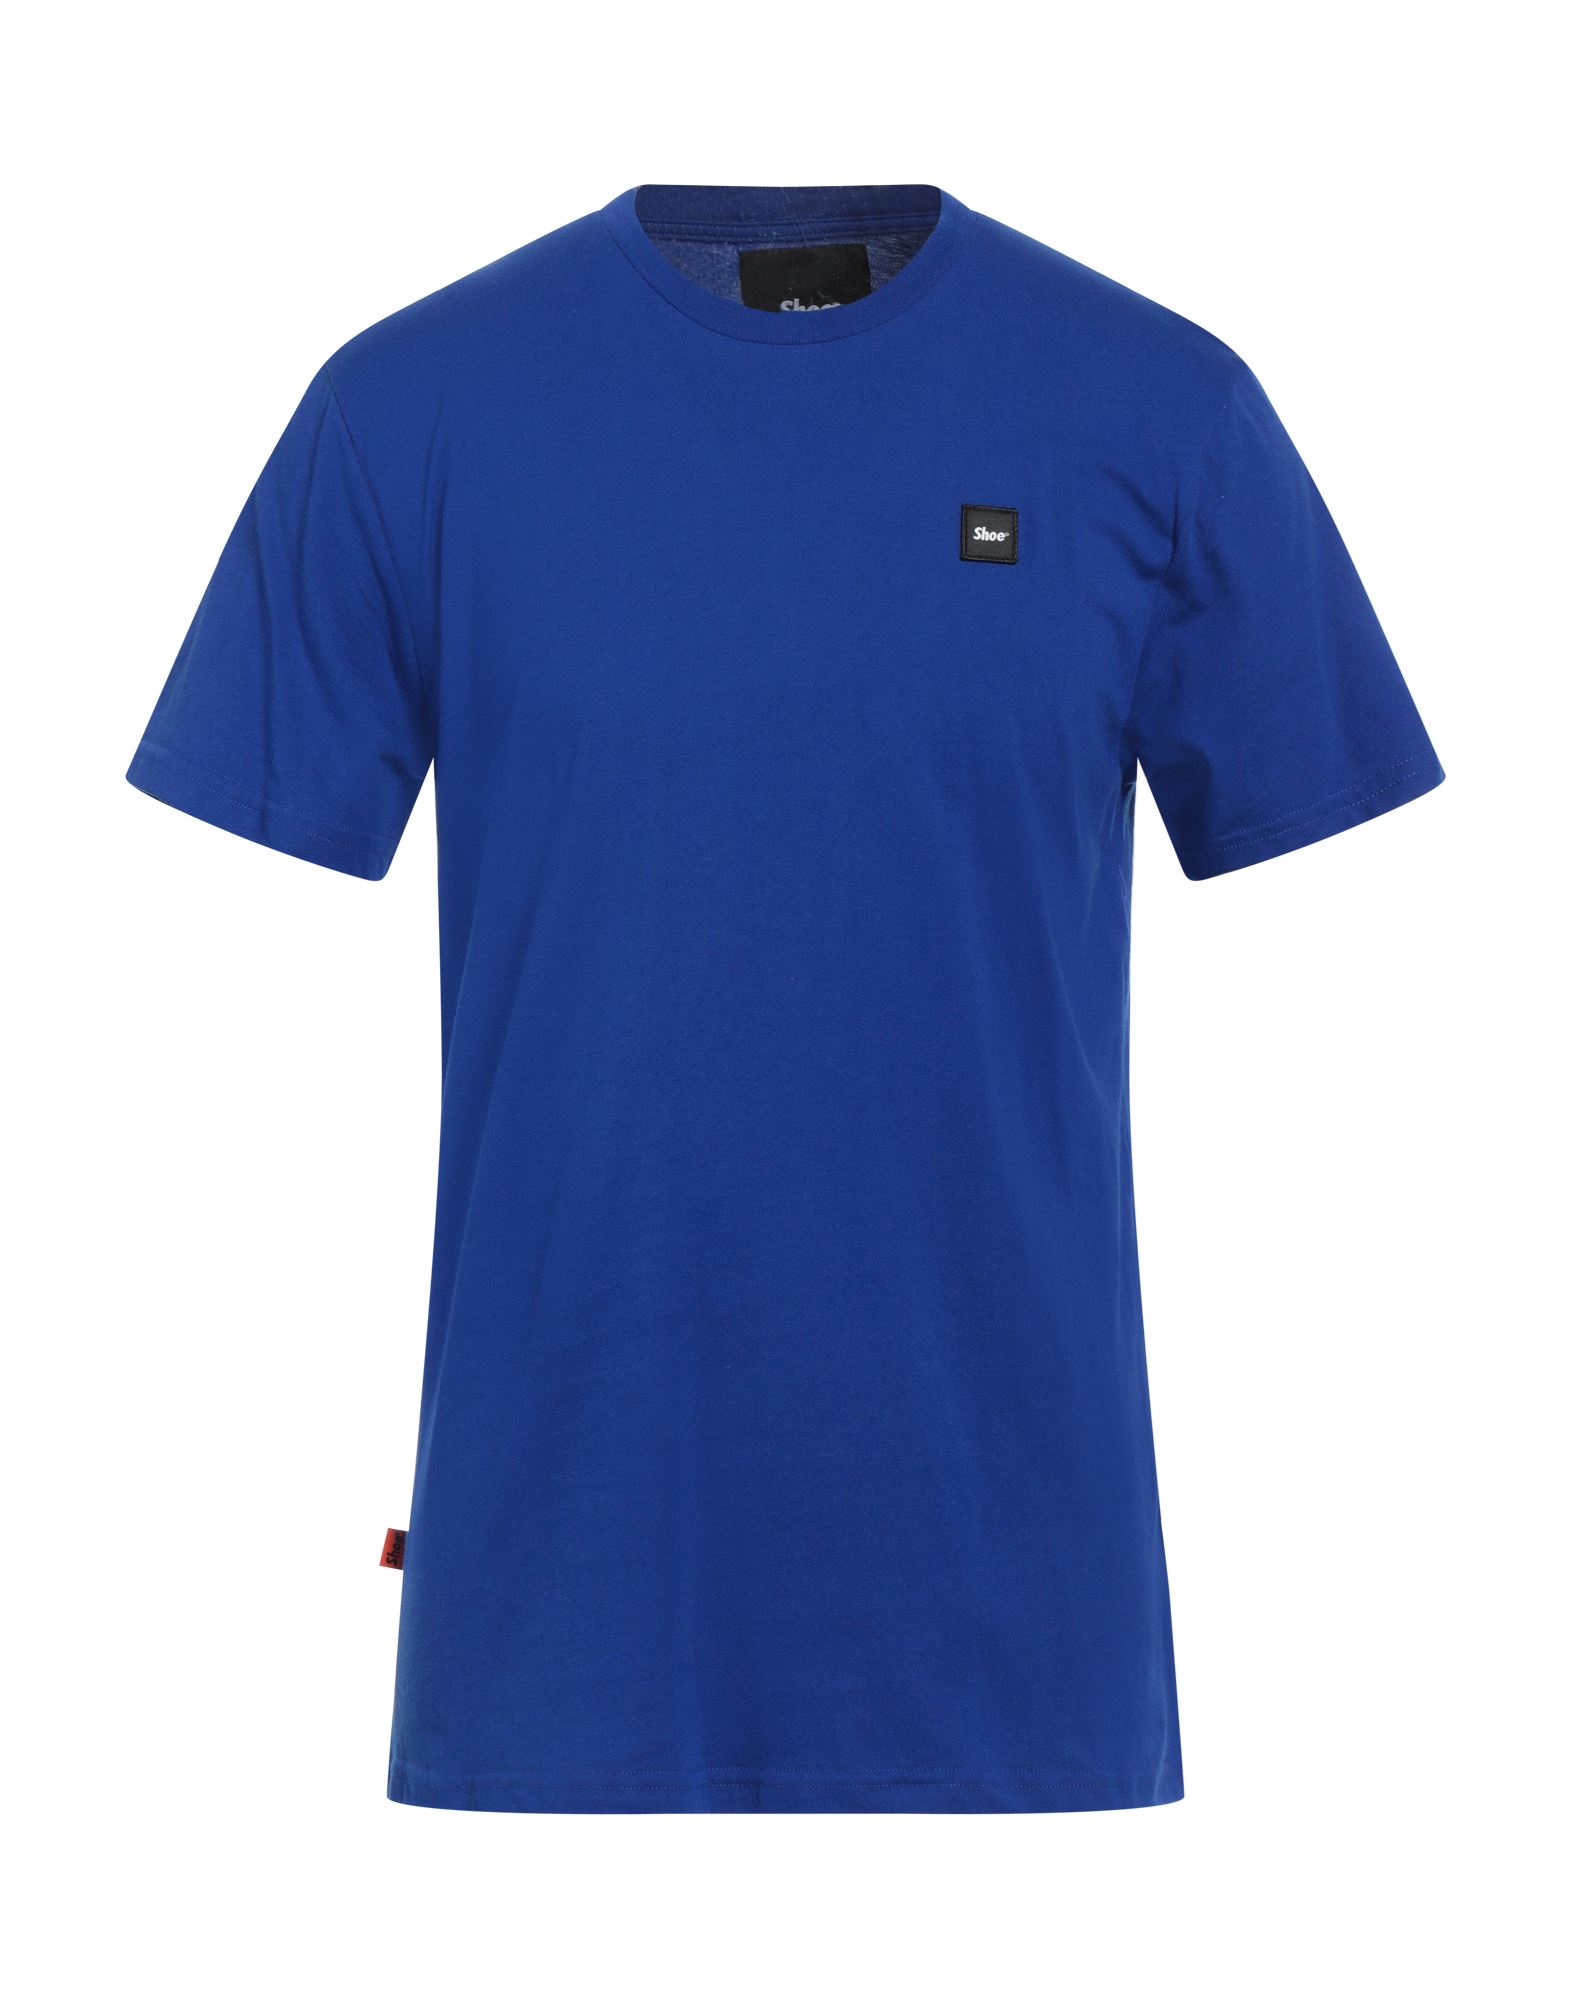 Shoe® Shoe Man T-shirt Bright Blue Size L Cotton